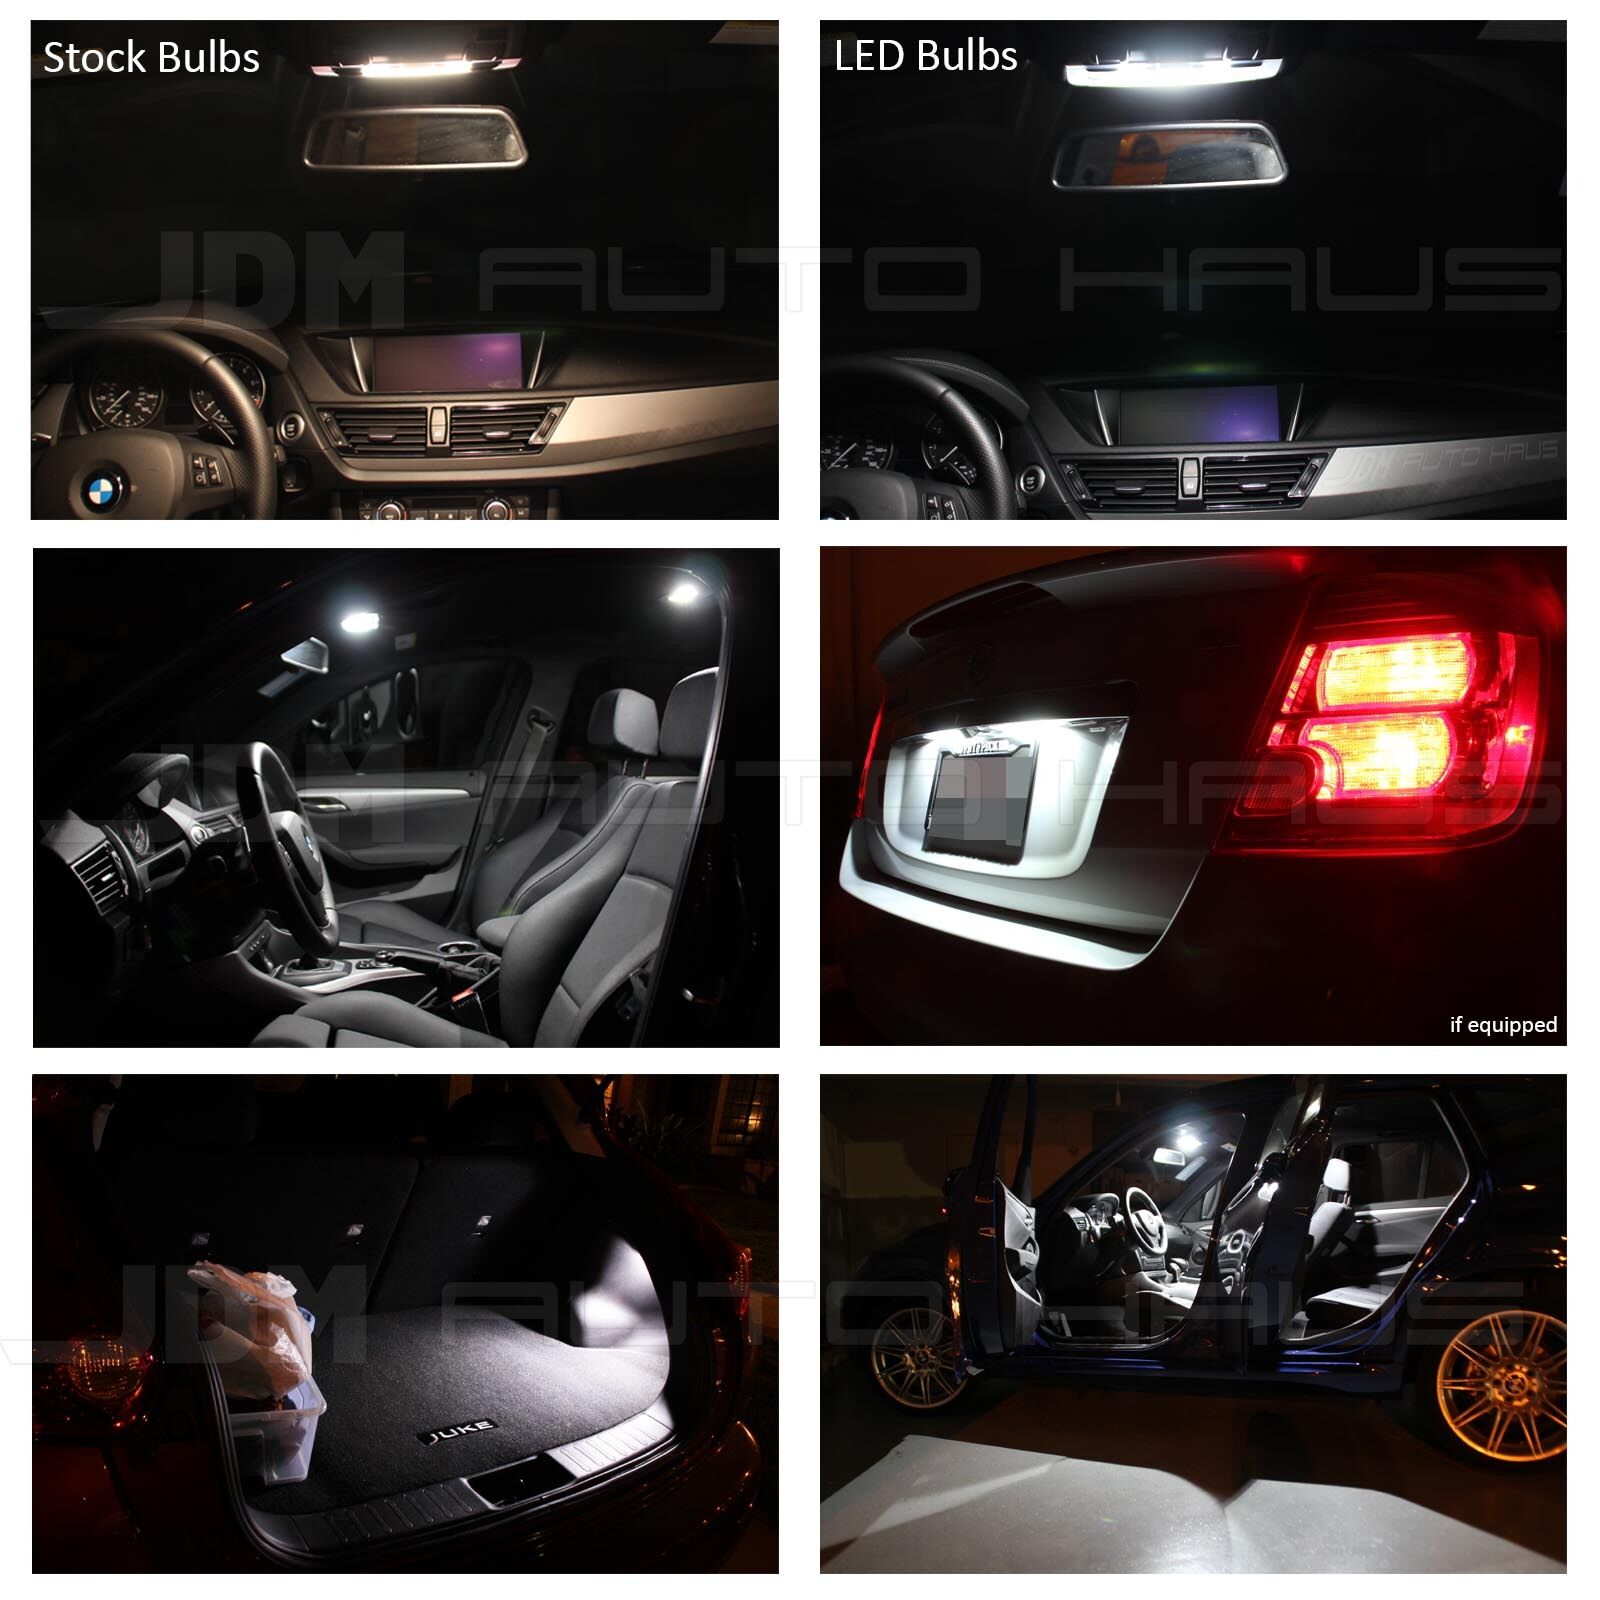 2015 Dodge Dart Premium White Interior LED Lights Package Kit